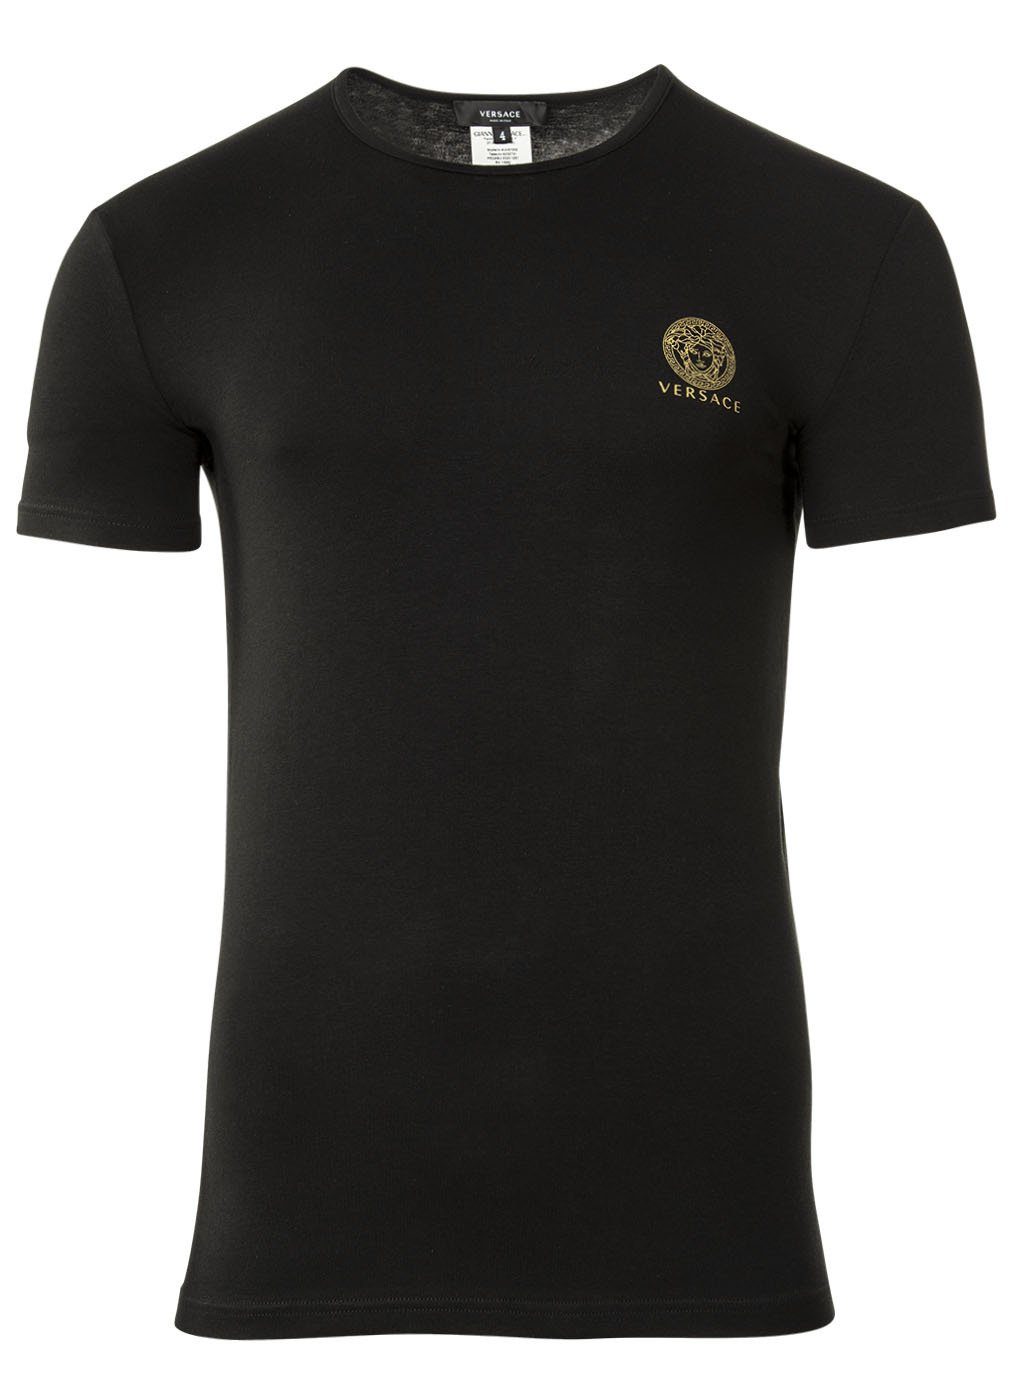 2er - Herren T-Shirt Versace Rundhals Unterhemd, Schwarz T-Shirt, Pack